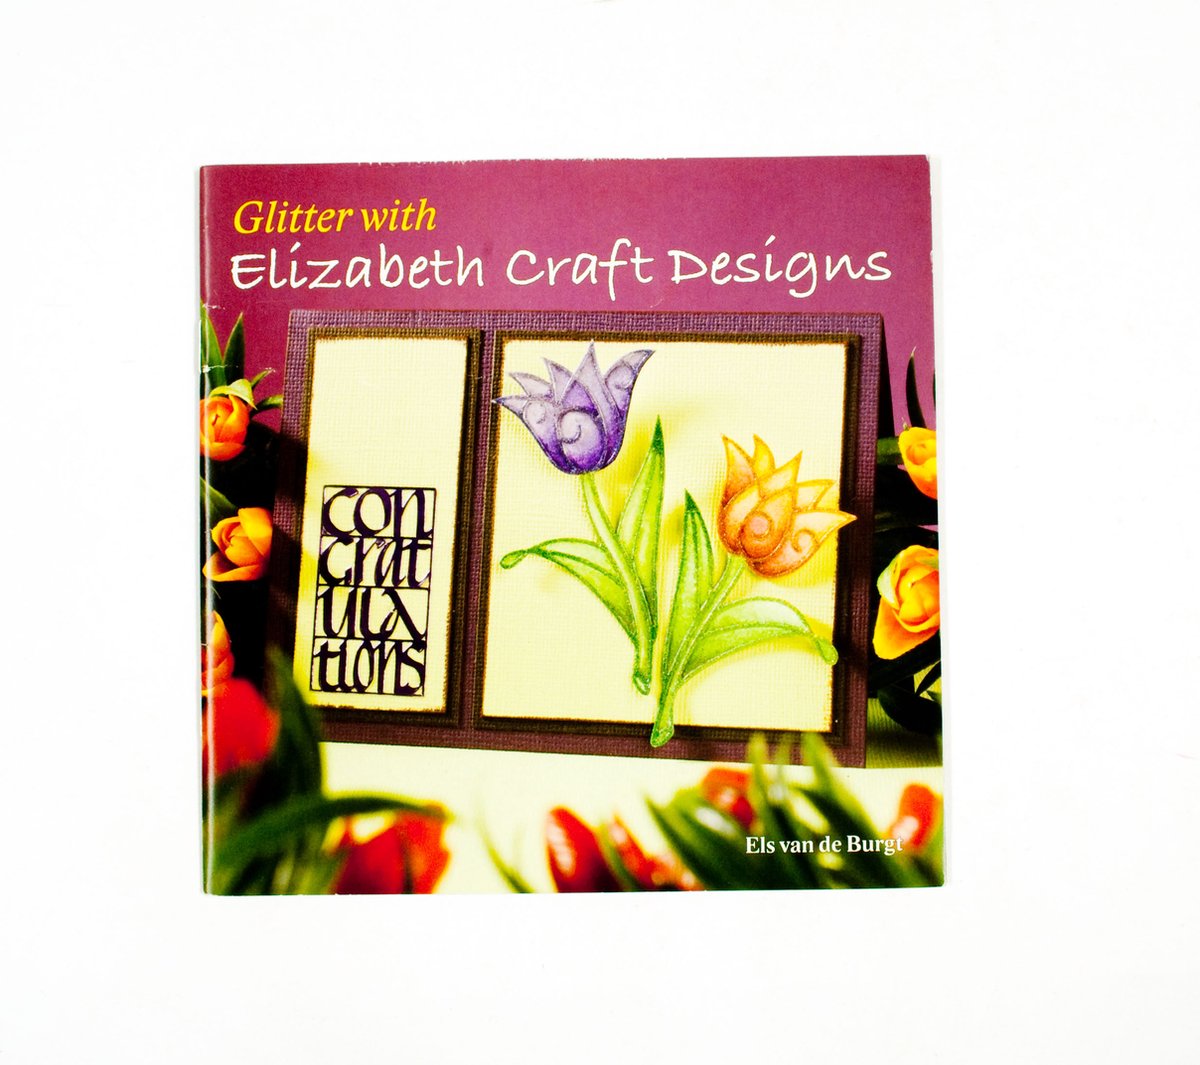 Glitter with Elisabeth Craft Designs